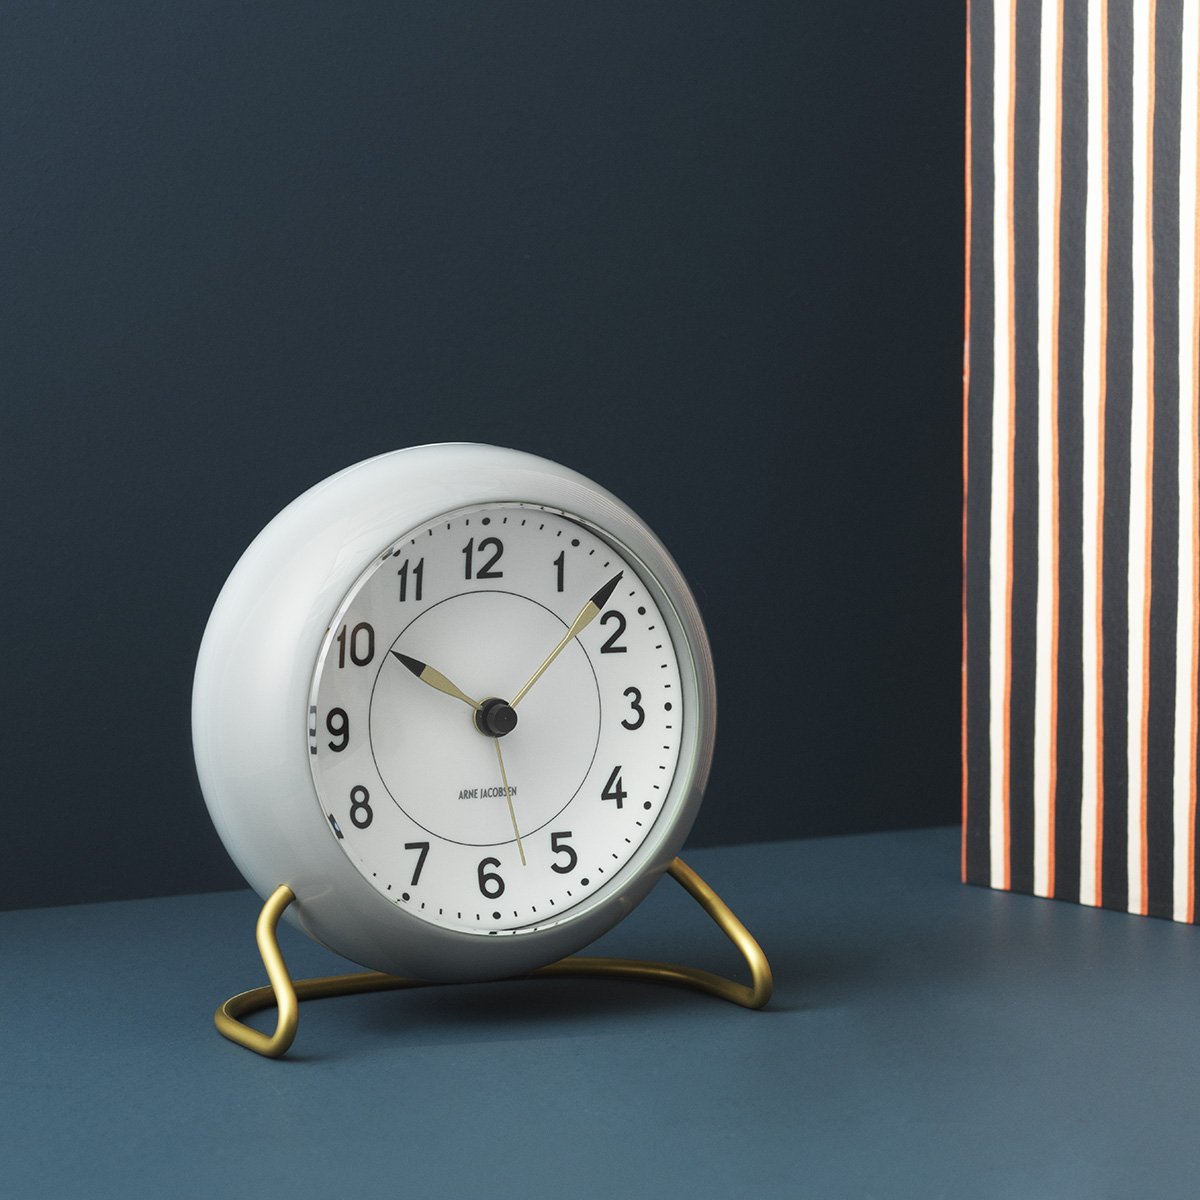 Arne Jacobsen Horloge de table de station avec alarme gris et blanc, 12 cm